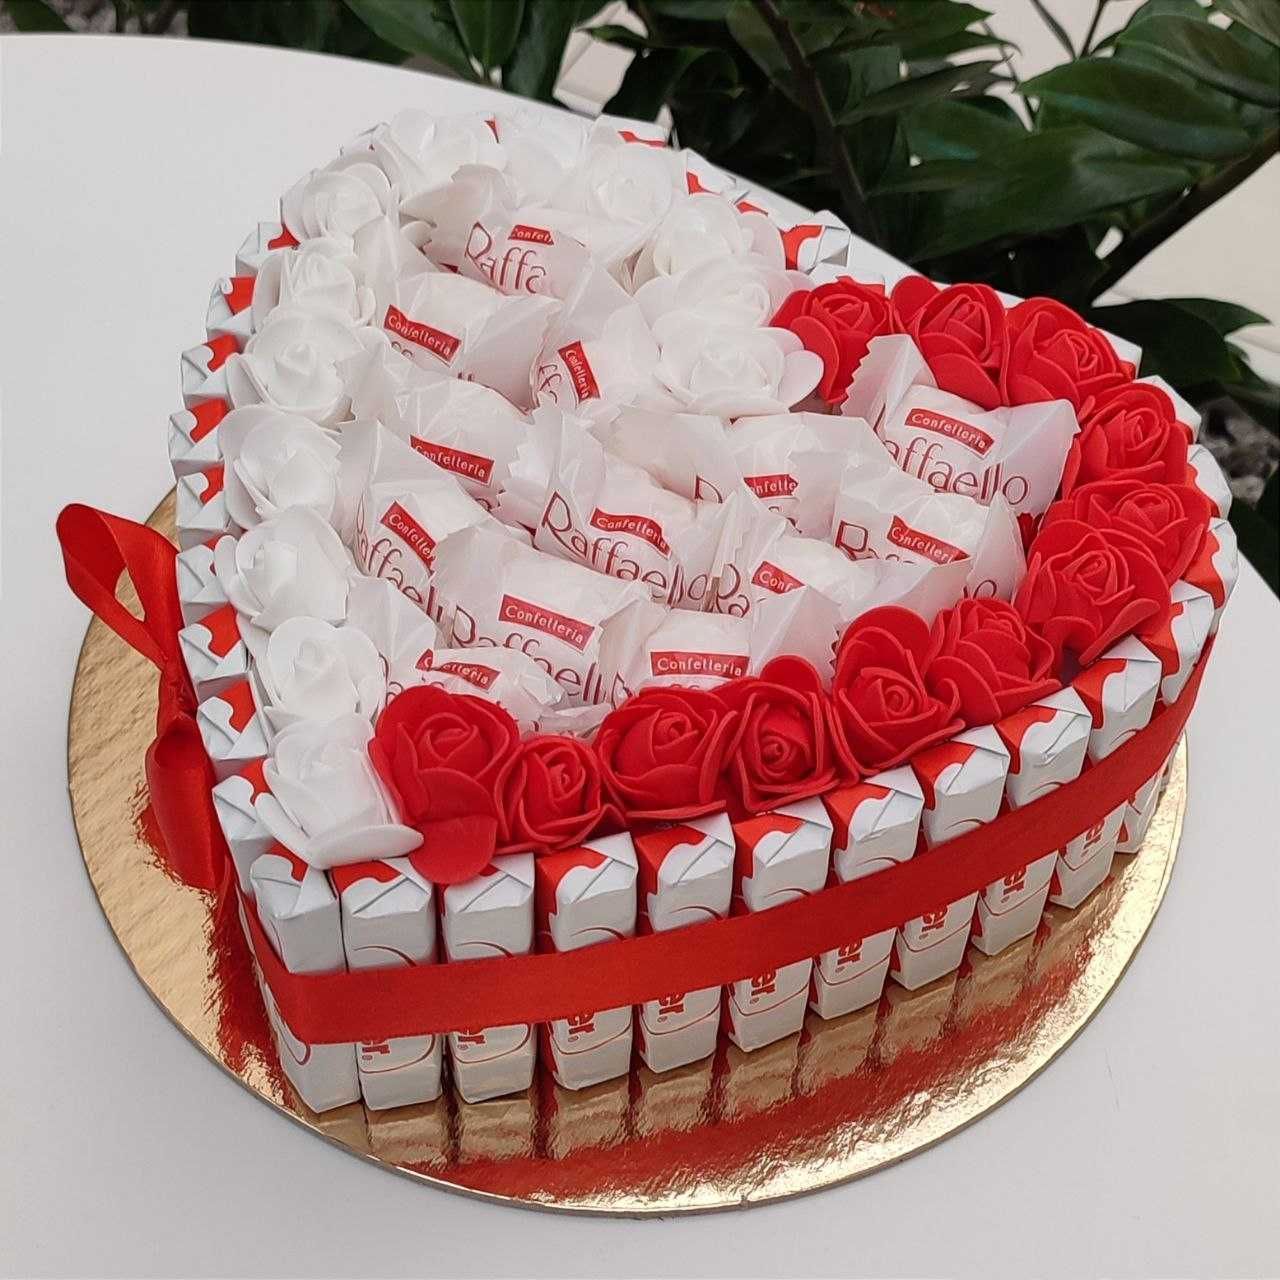 Tort ze słodyczy serce Raffaello róże. Prezent na 25 35 Urodziny, Ślub